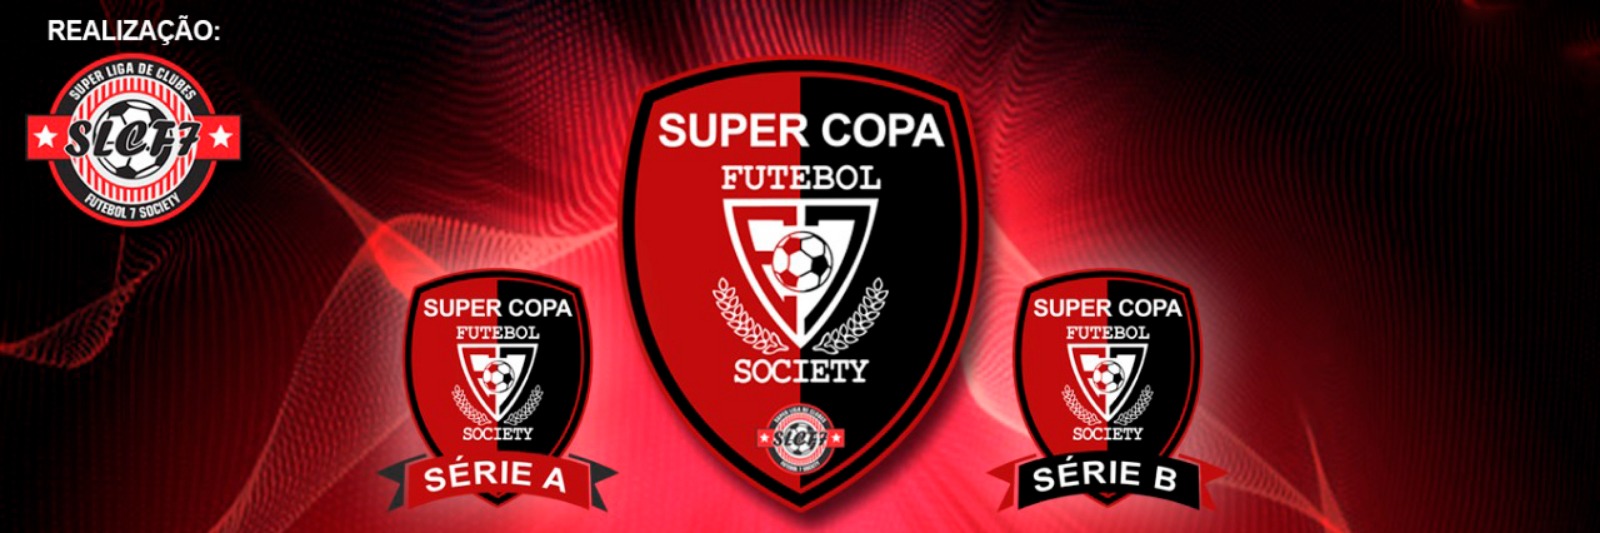 Super Copa Arena E7 2021